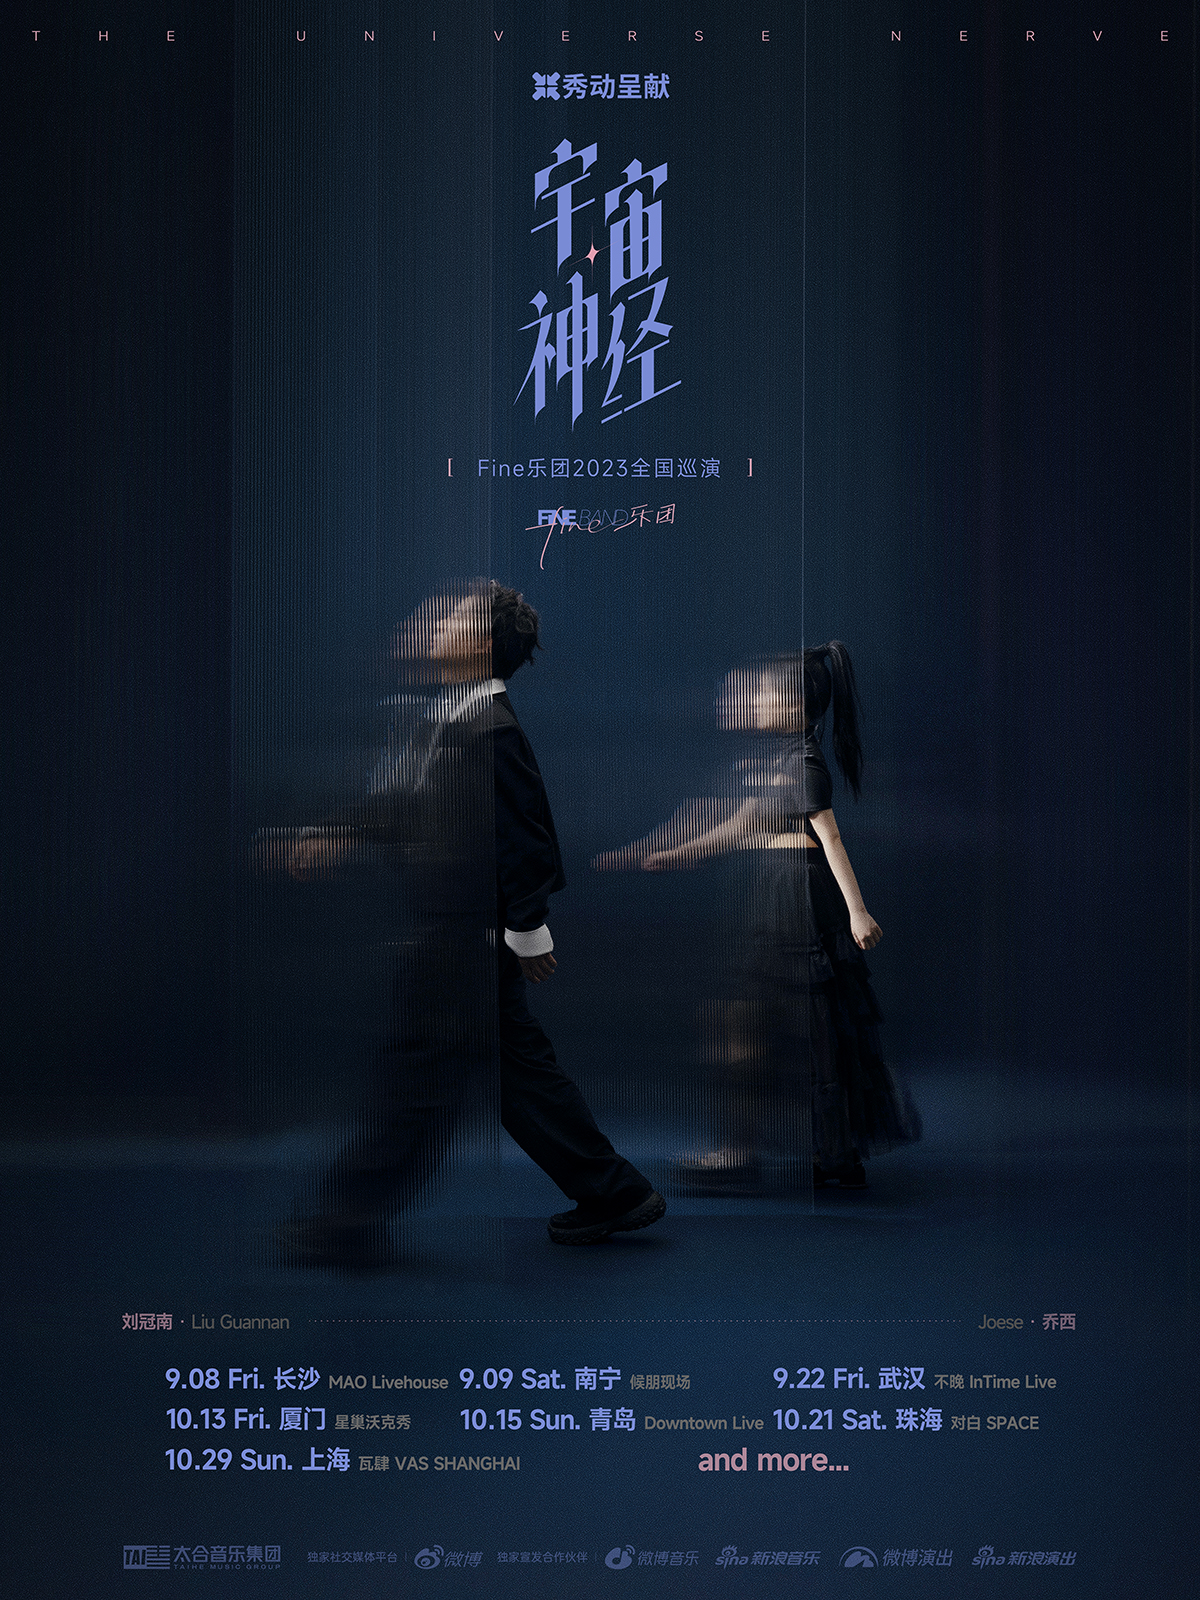 [上海]Fine乐团「宇宙神经」2023巡演 LVH